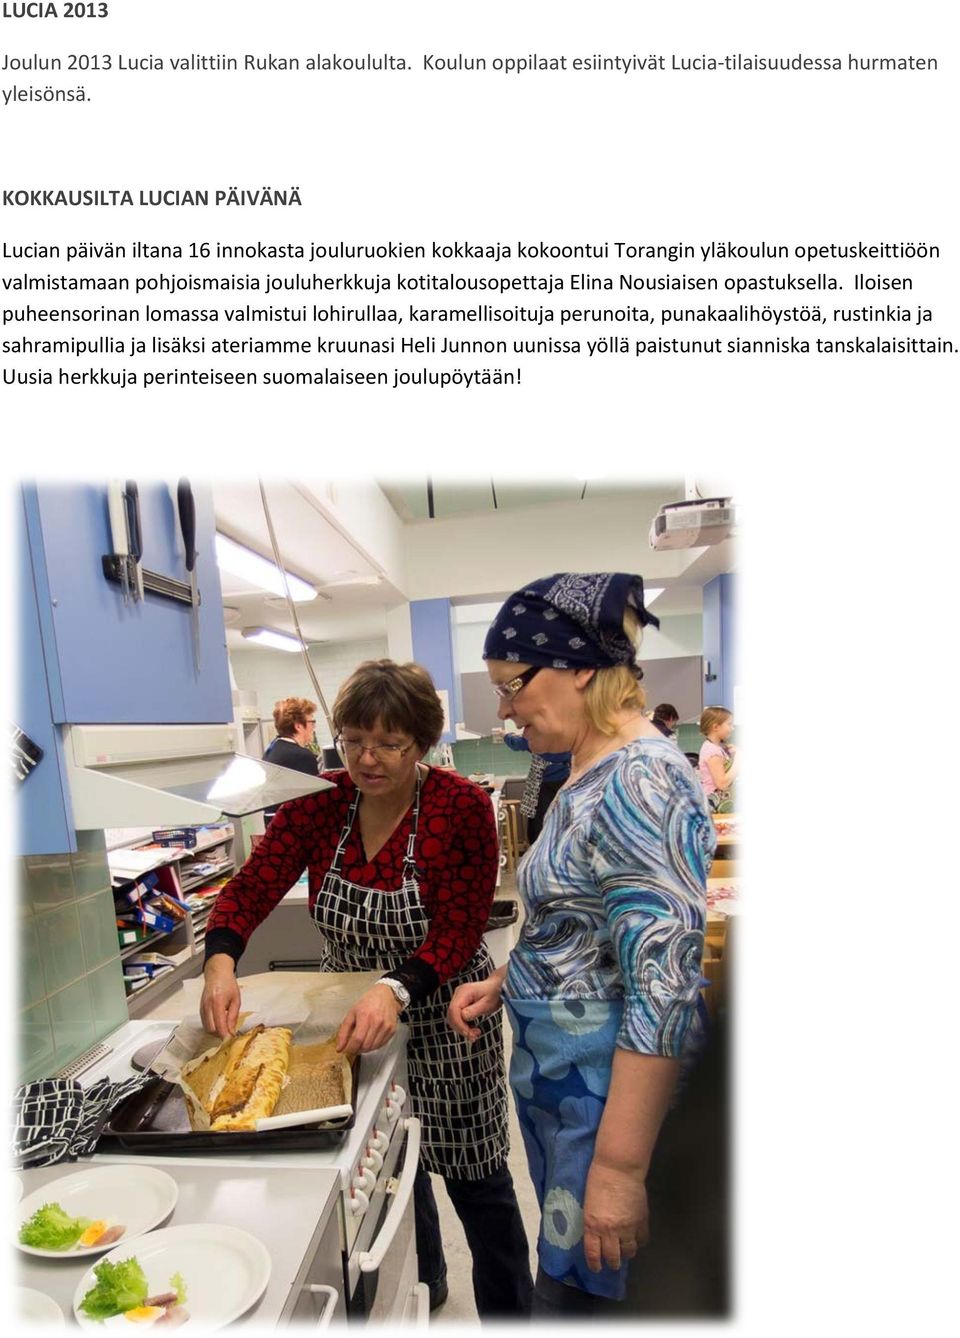 jouluherkkuja kotitalousopettaja Elina Nousiaisen opastuksella.